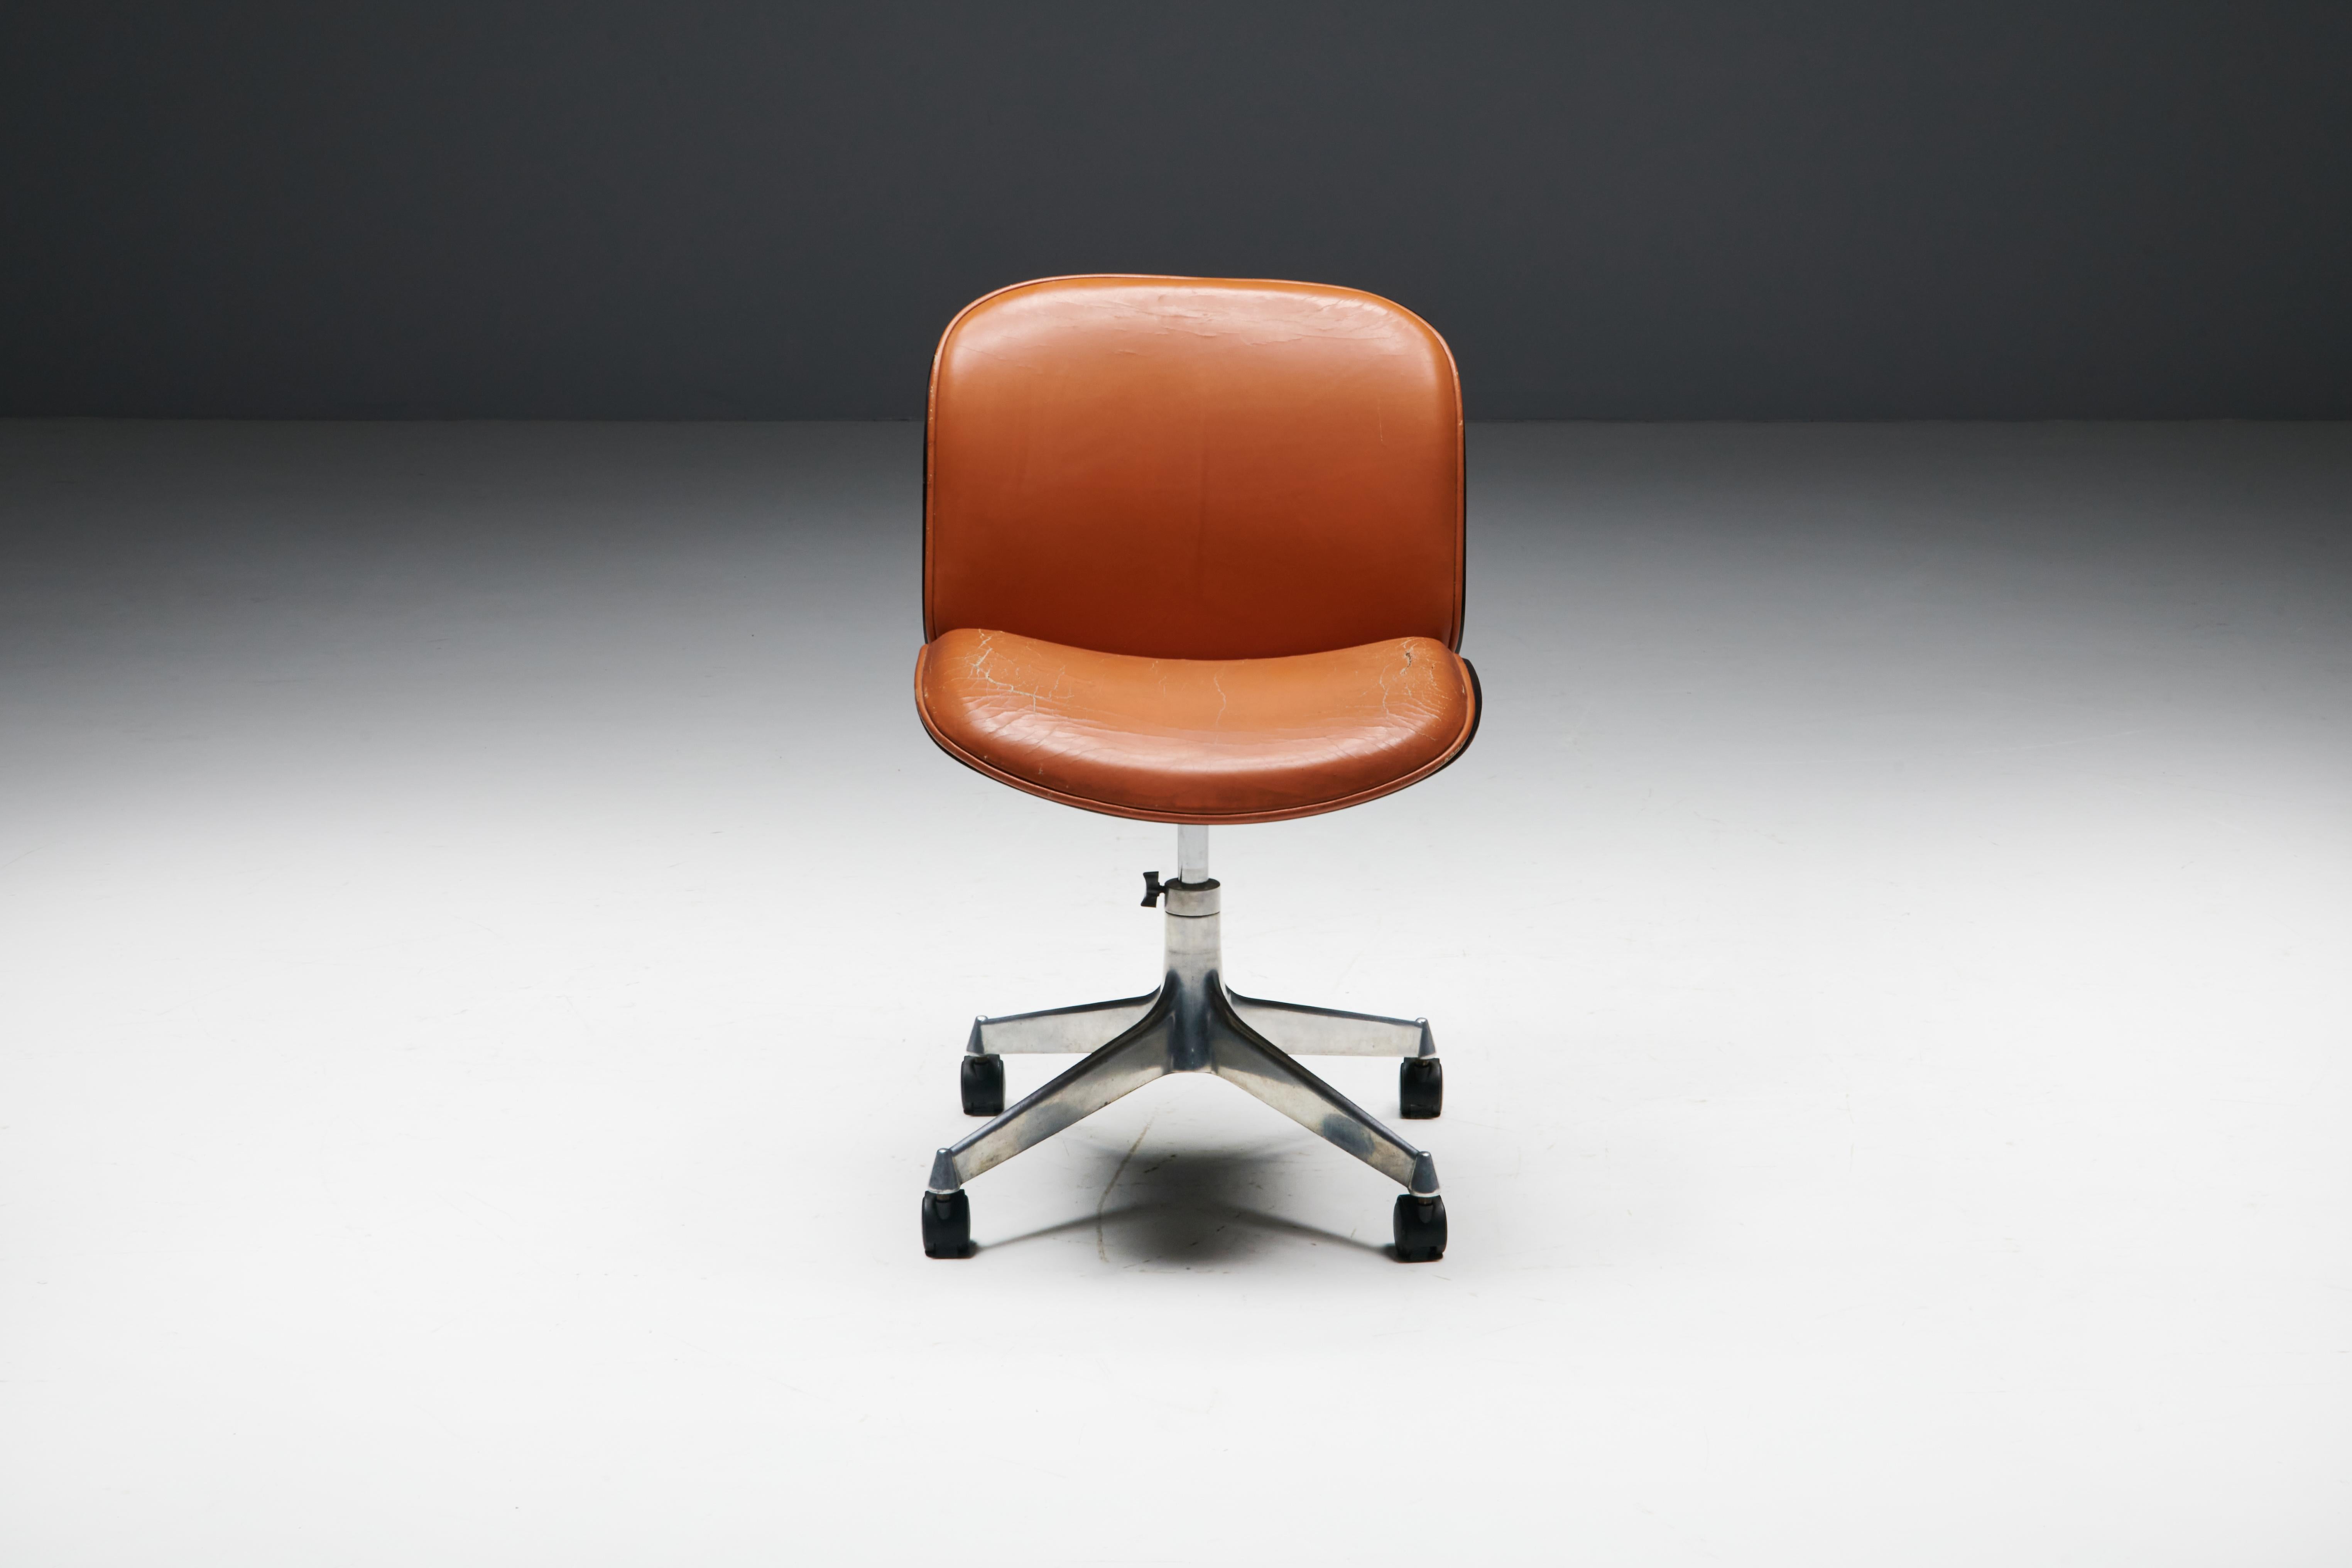 Chaise de bureau d'Ico Parisi pour MIM Roma, un chef-d'œuvre intemporel du design italien du milieu du siècle dernier. Cette chaise de bureau de la célèbre série Terni d'Ico Parisi a été fabriquée en 1958. Fabriquée en placage de noyer et dotée d'un